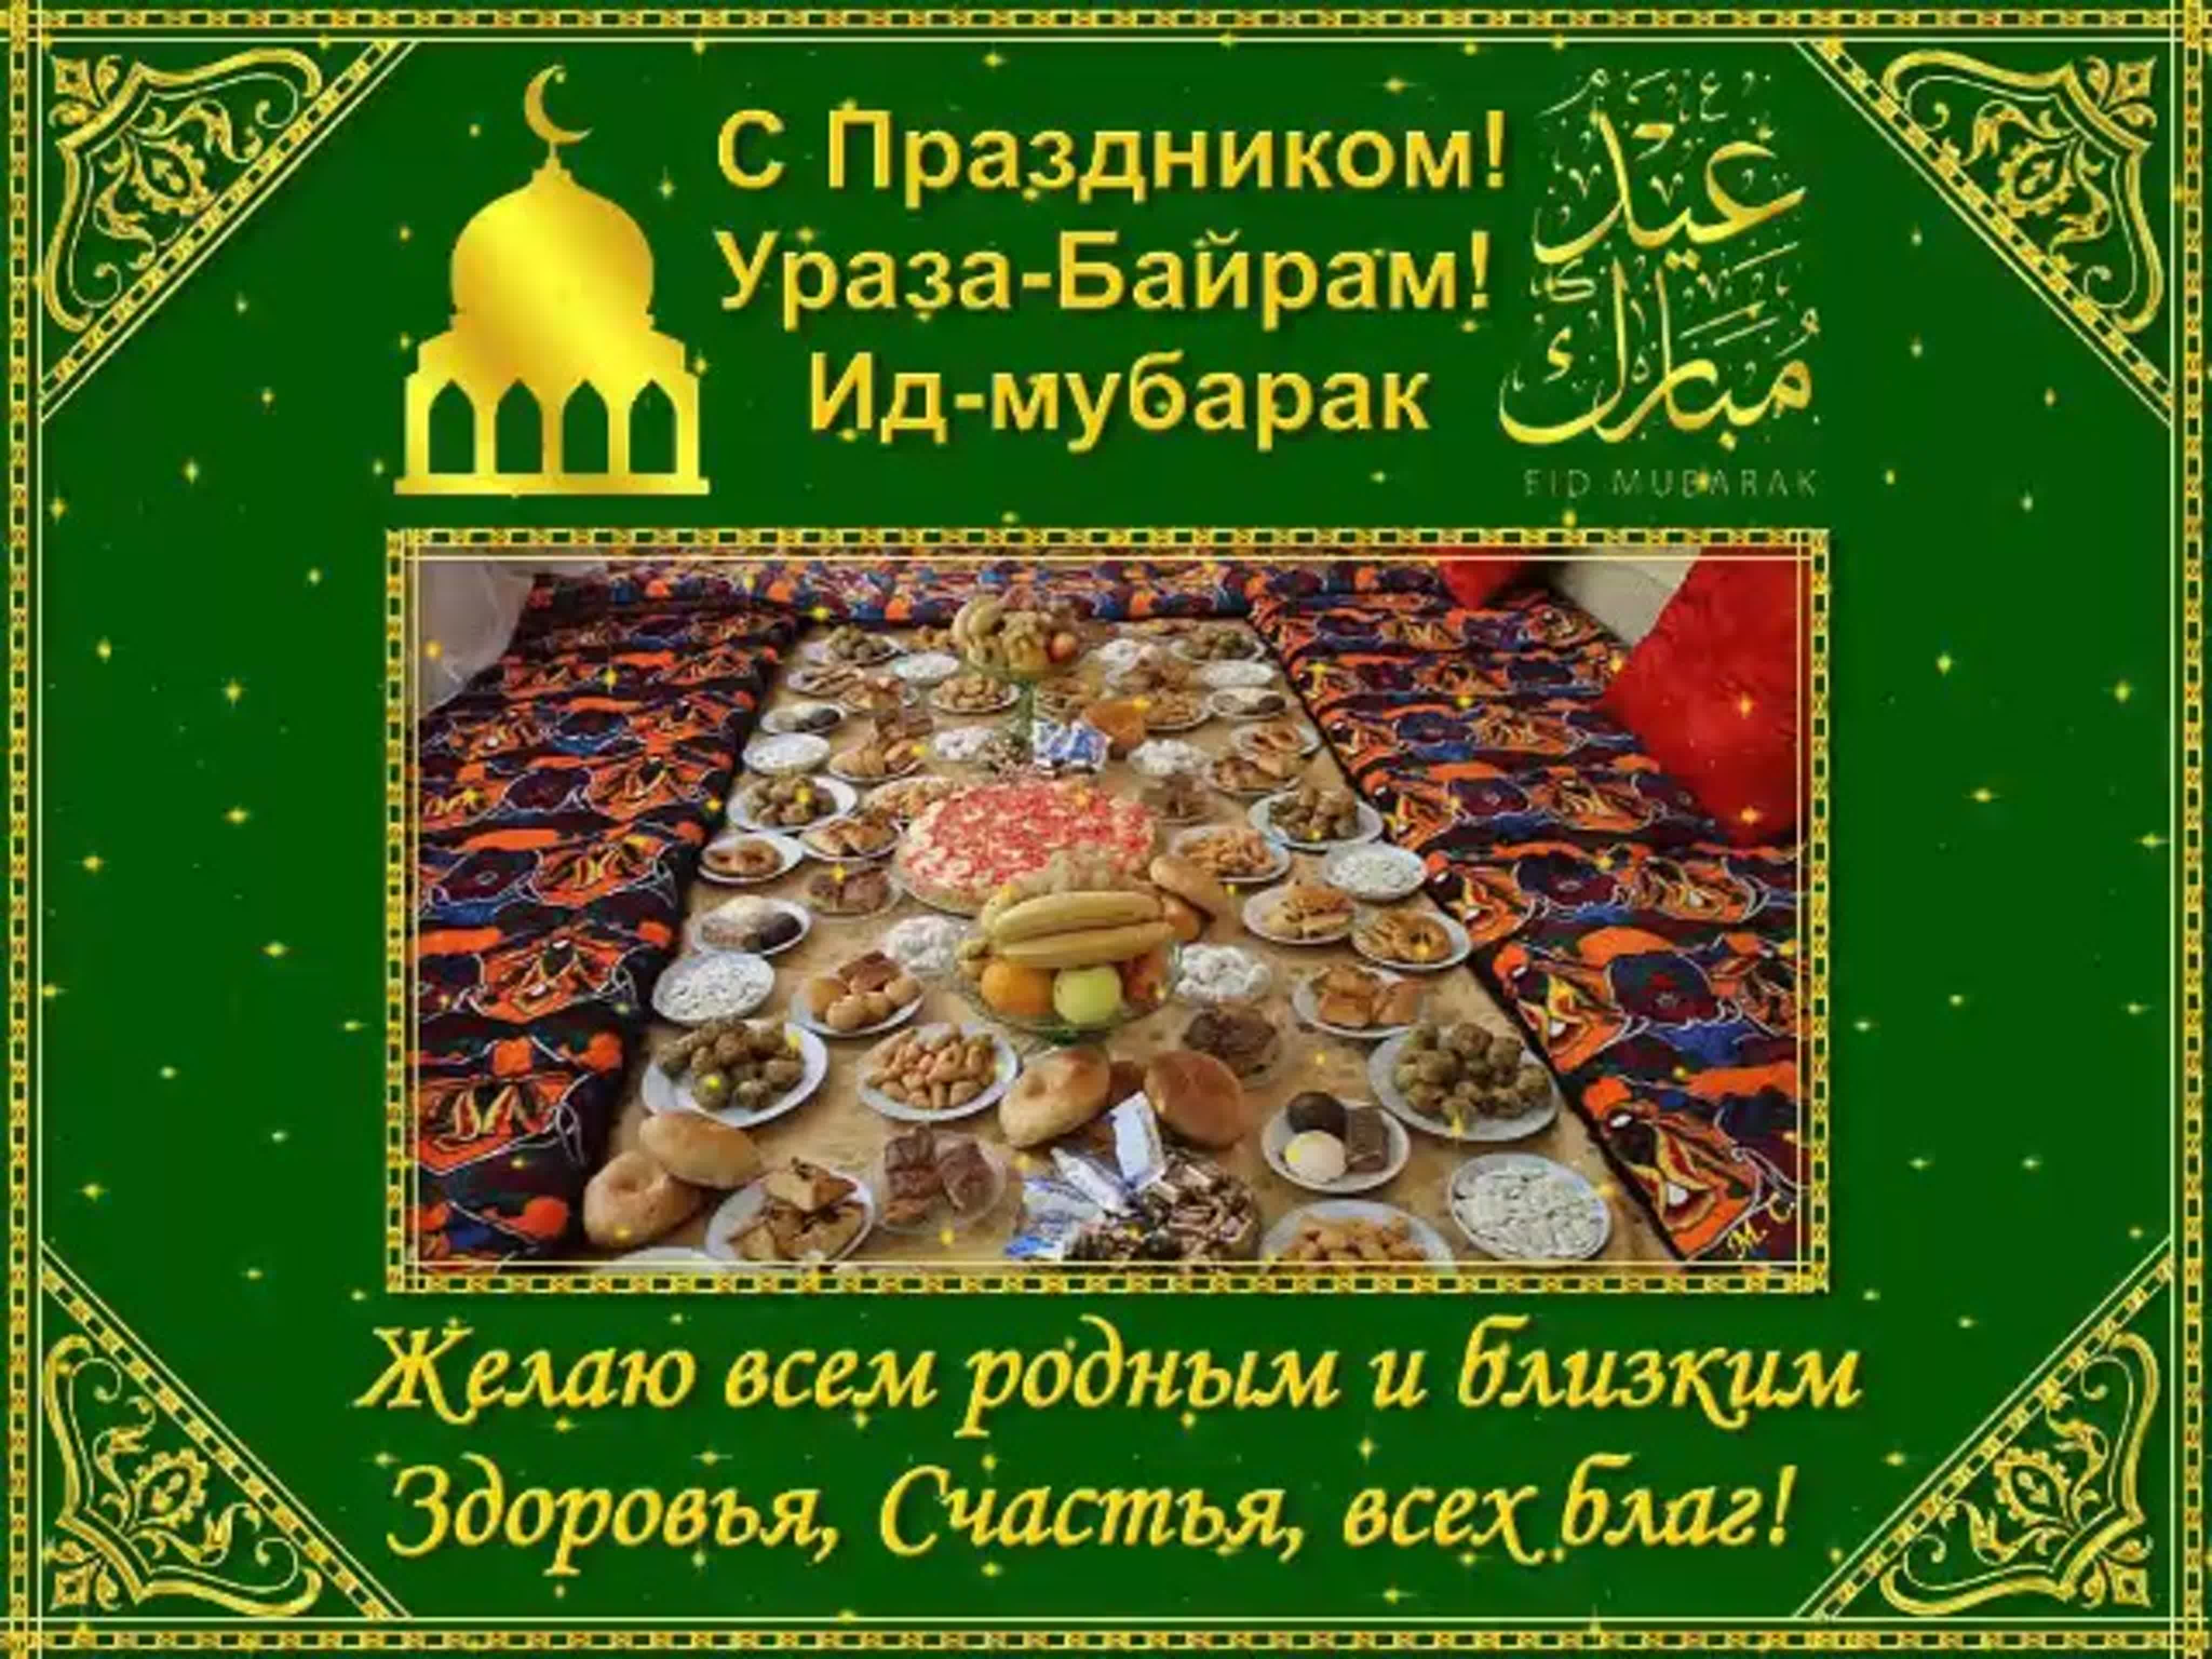 Ураза Байрам - поздравленияна русском , арабском и татарском языках и СМС поздравления с праздником